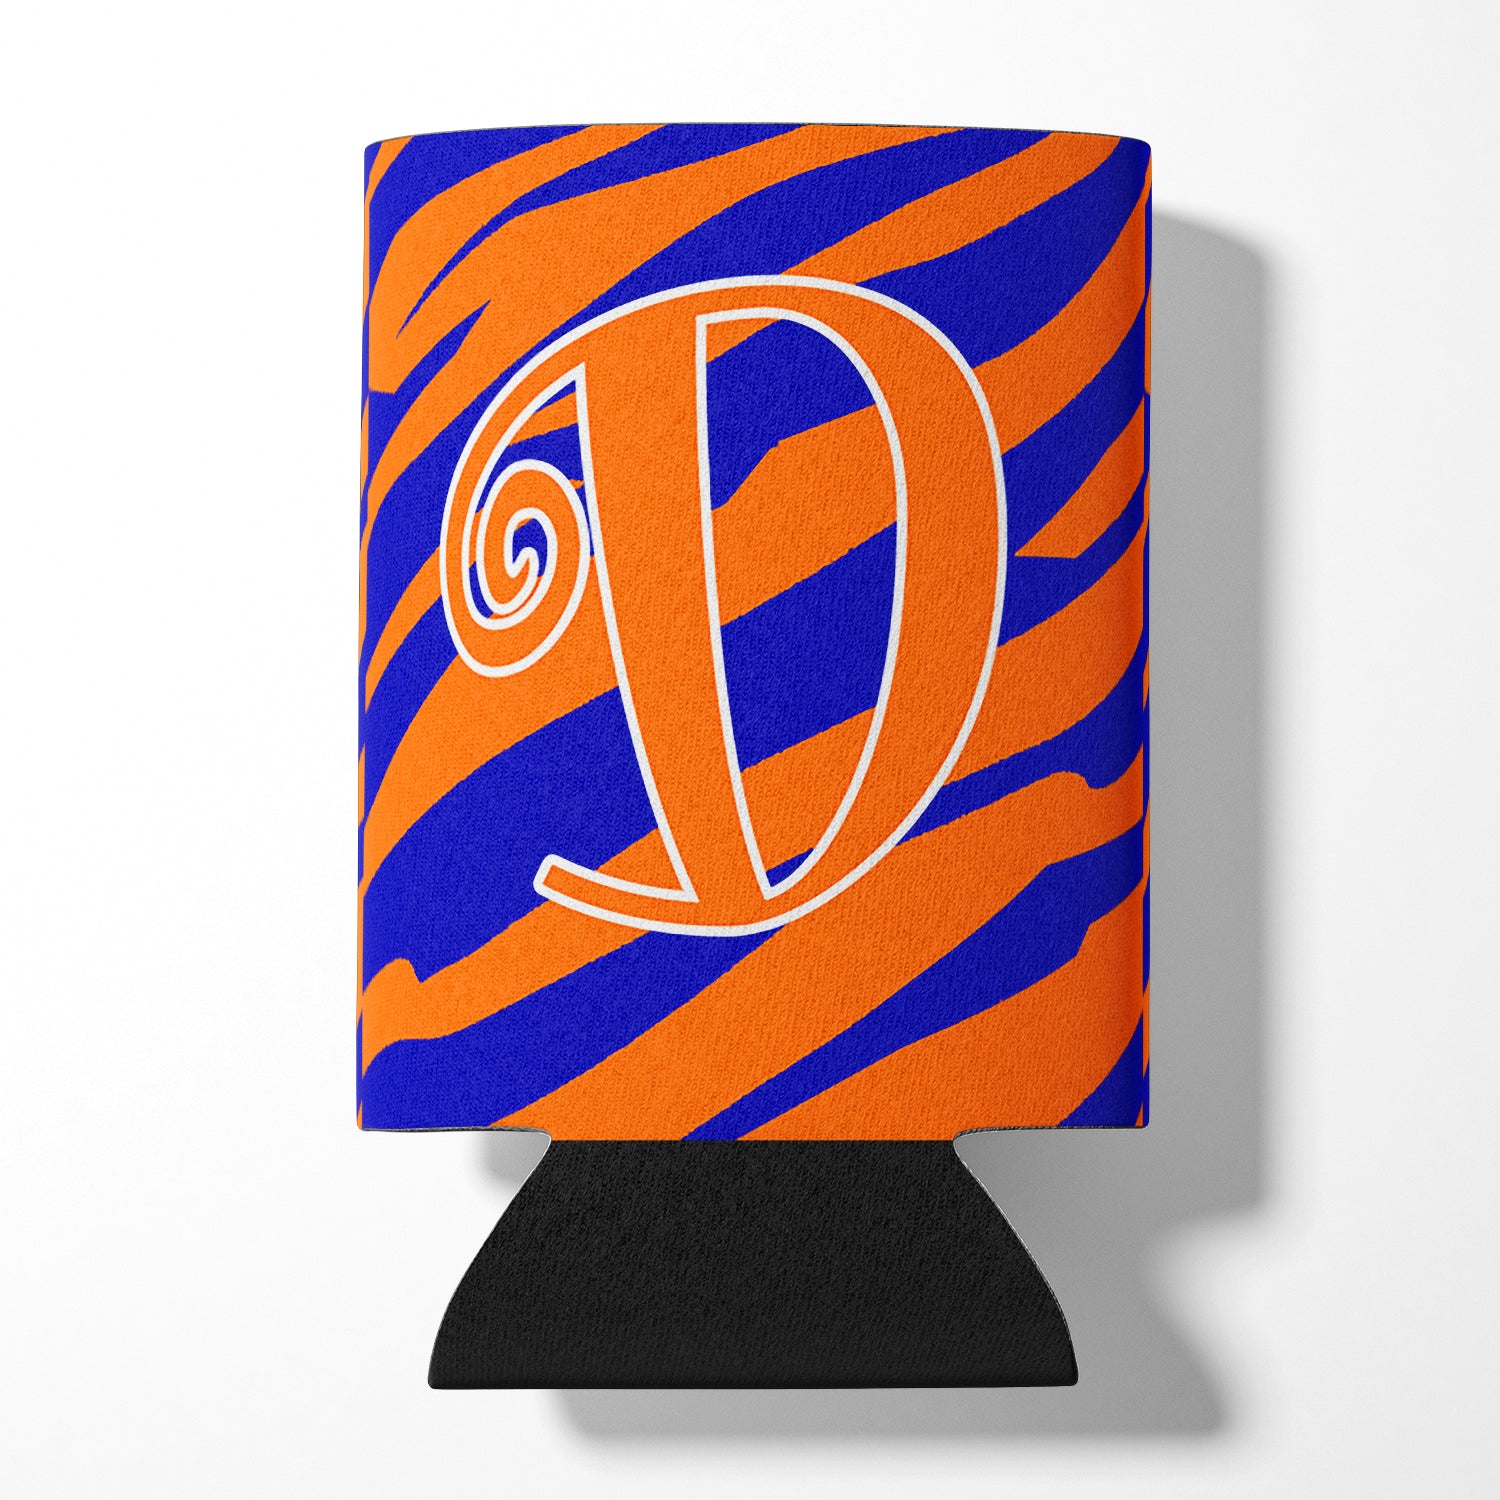 Letter D Initial Monogram - Tiger Stripe Blue and Orange Can Beverage Insulator Hugger.